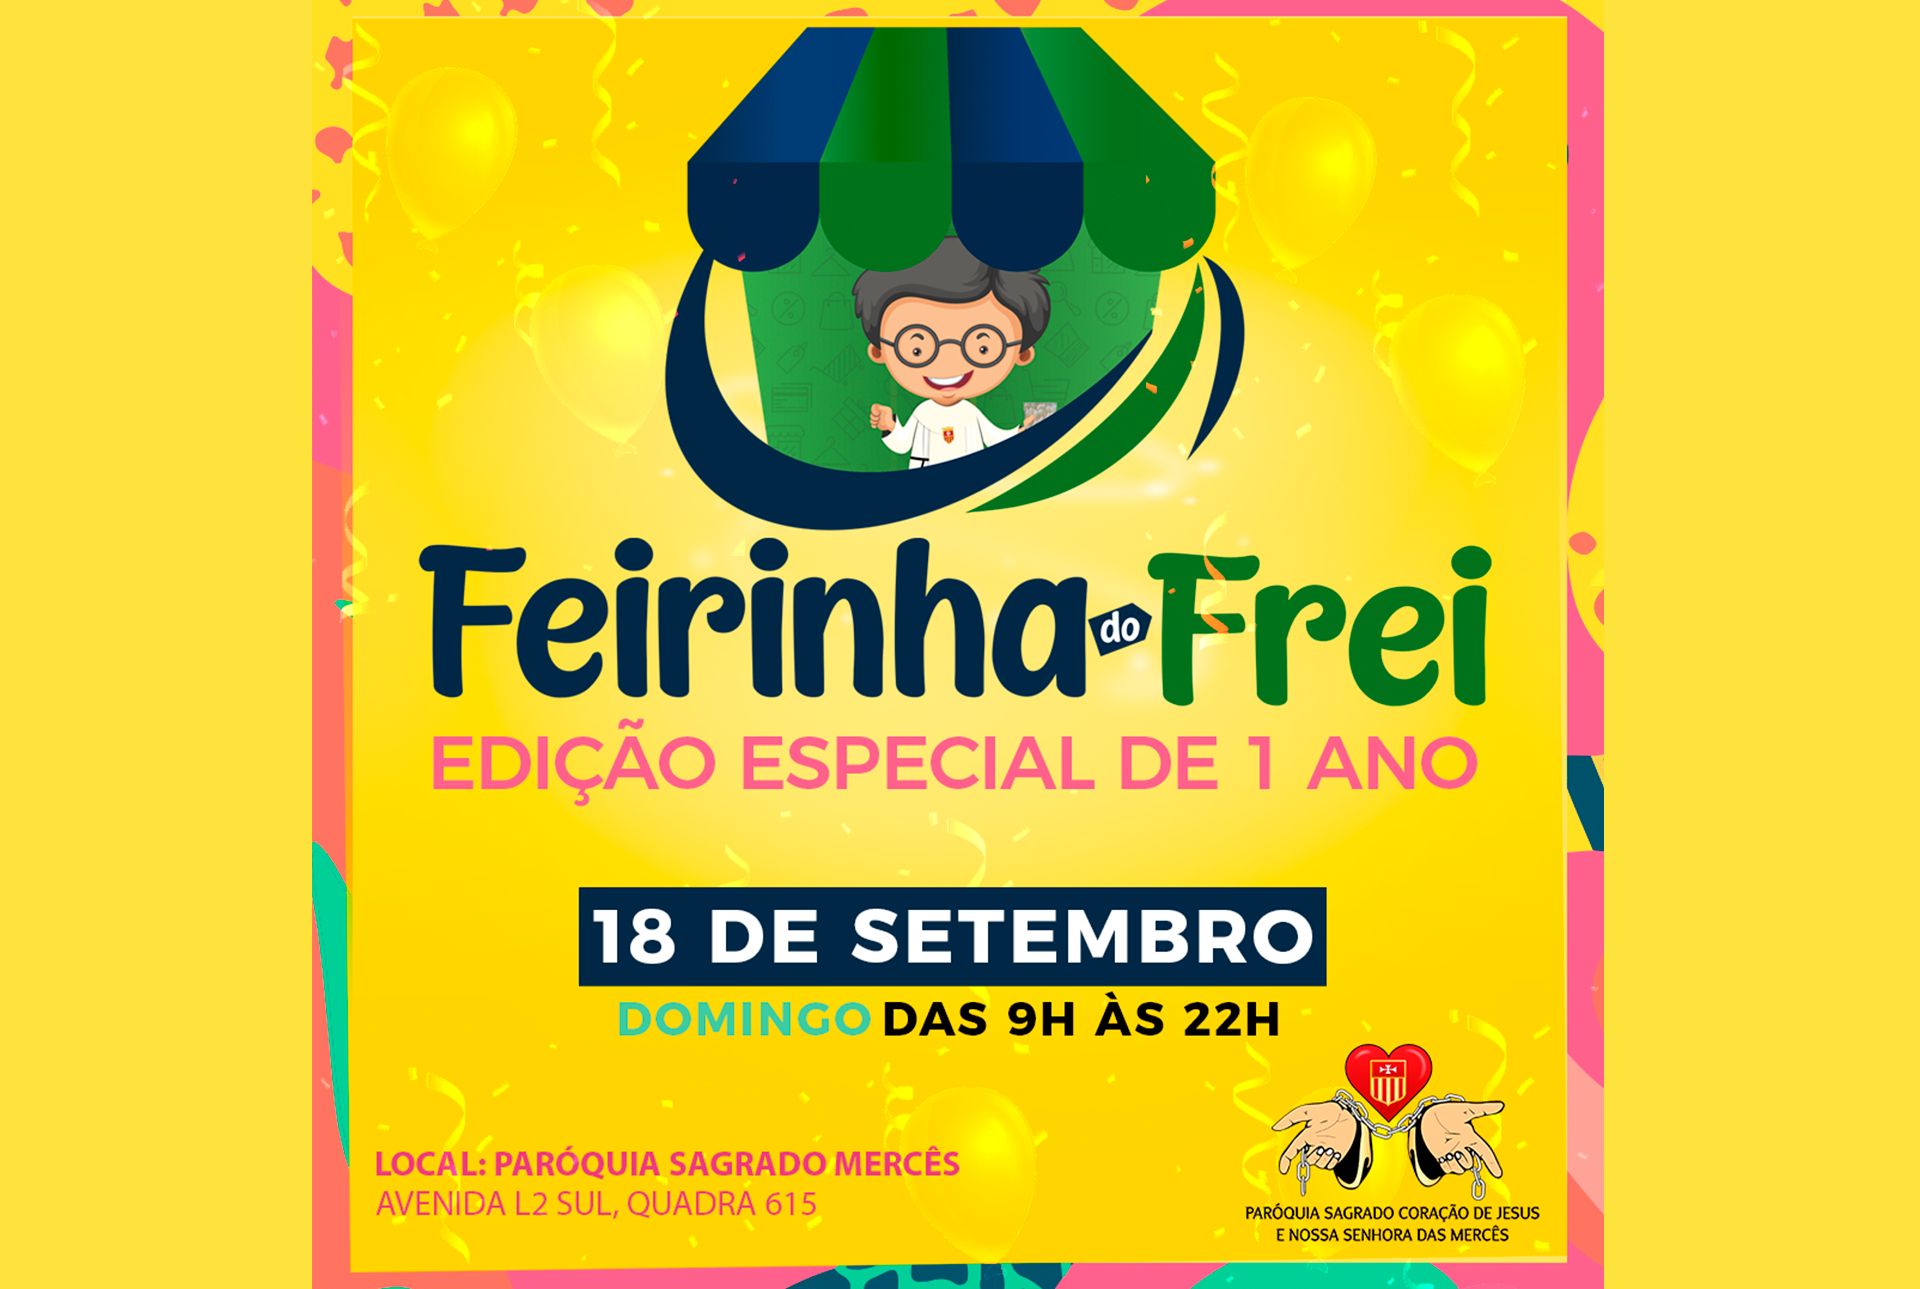 Feirinha do Frei: Paróquia da Asa Sul prepara edição especial para celebrar primeiro ano de atividades